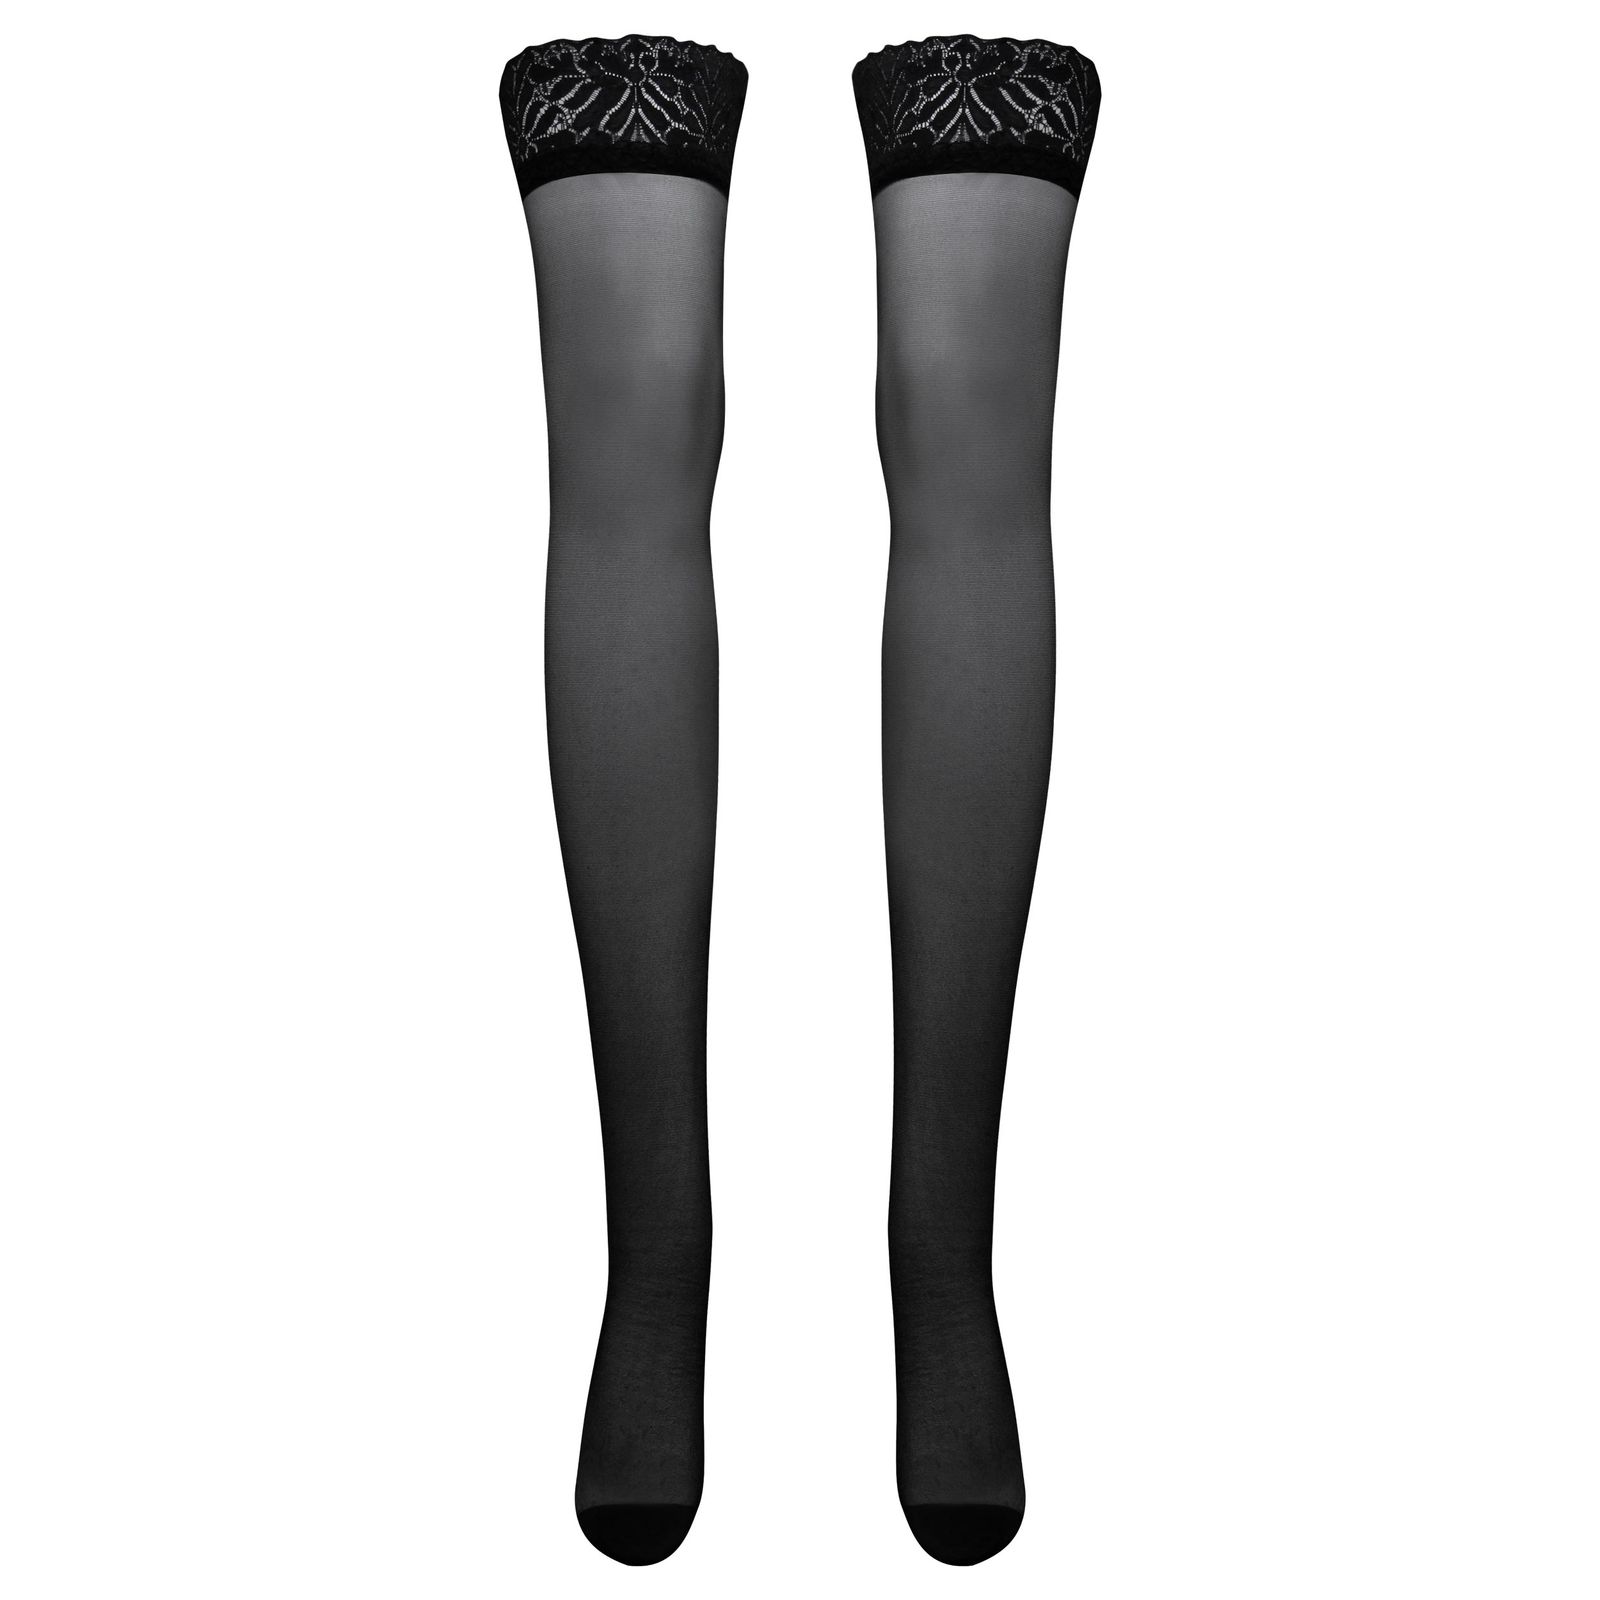 جوراب ساق بلند زنانه ماییلدا مدل توری کد 4786-2072 رنگ مشکی -  - 2